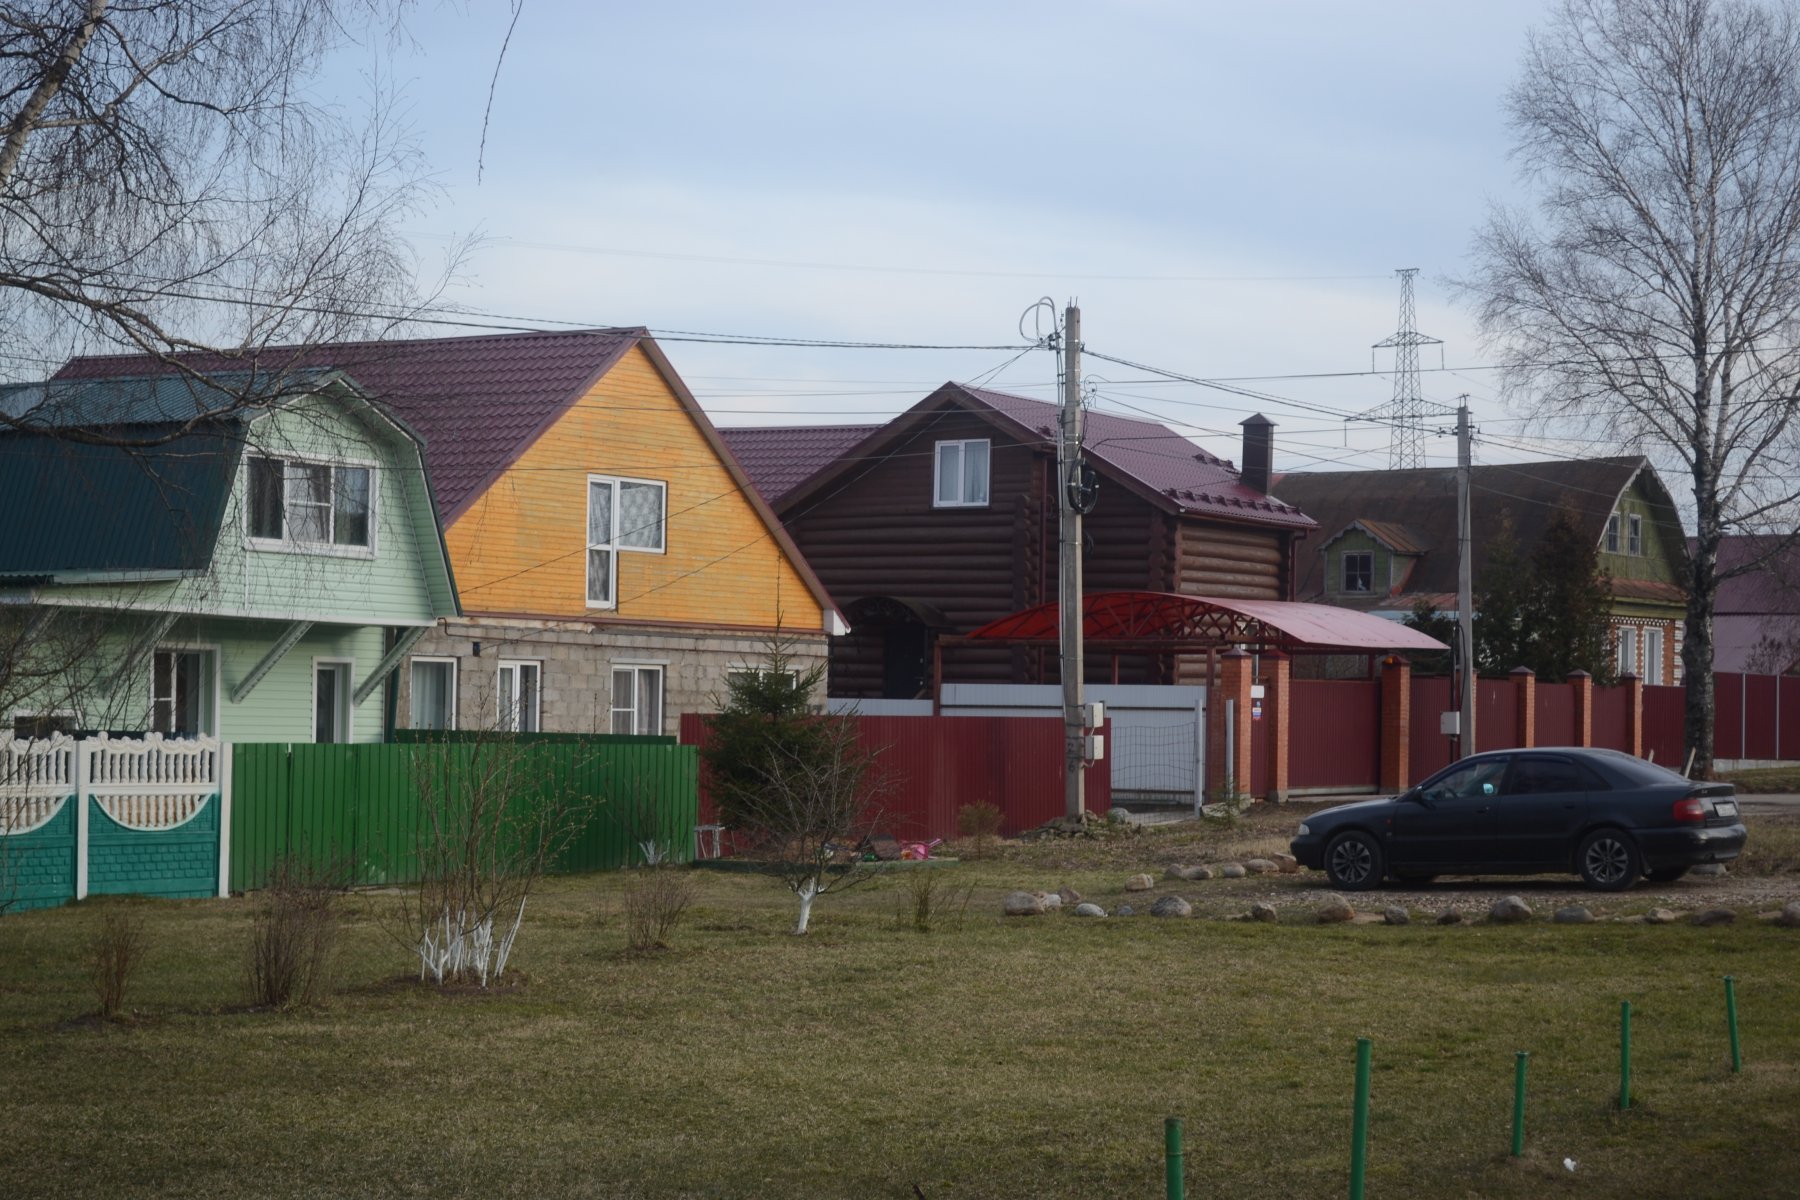 Жителям СНТ и коттеджных поселков в Подмосковье могут передать права собственности на общее имущество